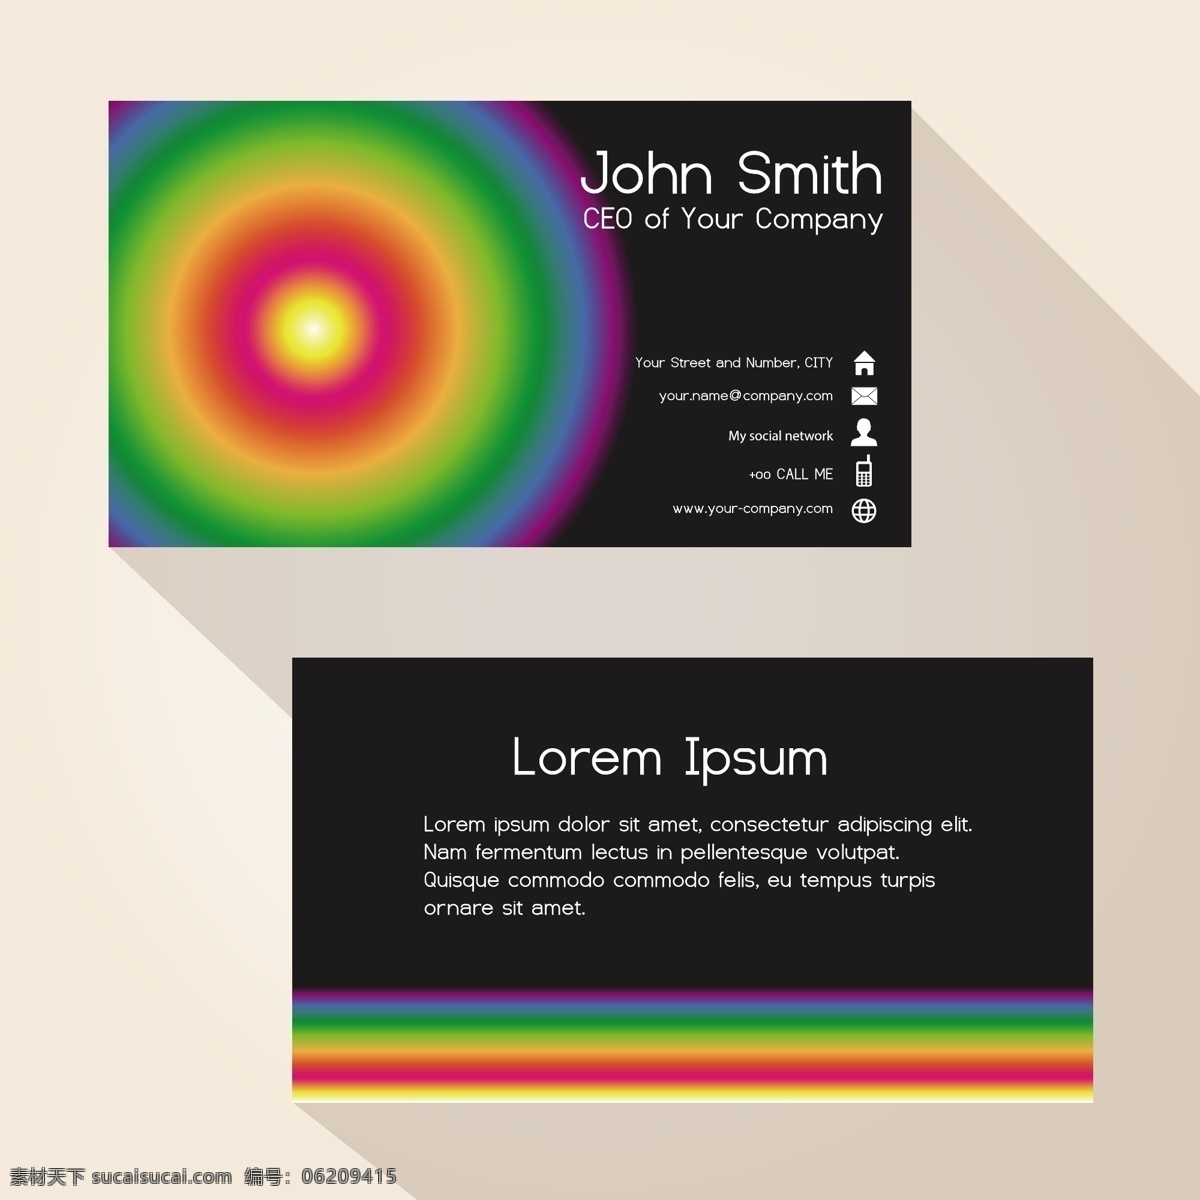 彩色 立体 图案 卡通 矢量 黑色 光圈 英文 卡片 矢量素材 设计素材 平面素材